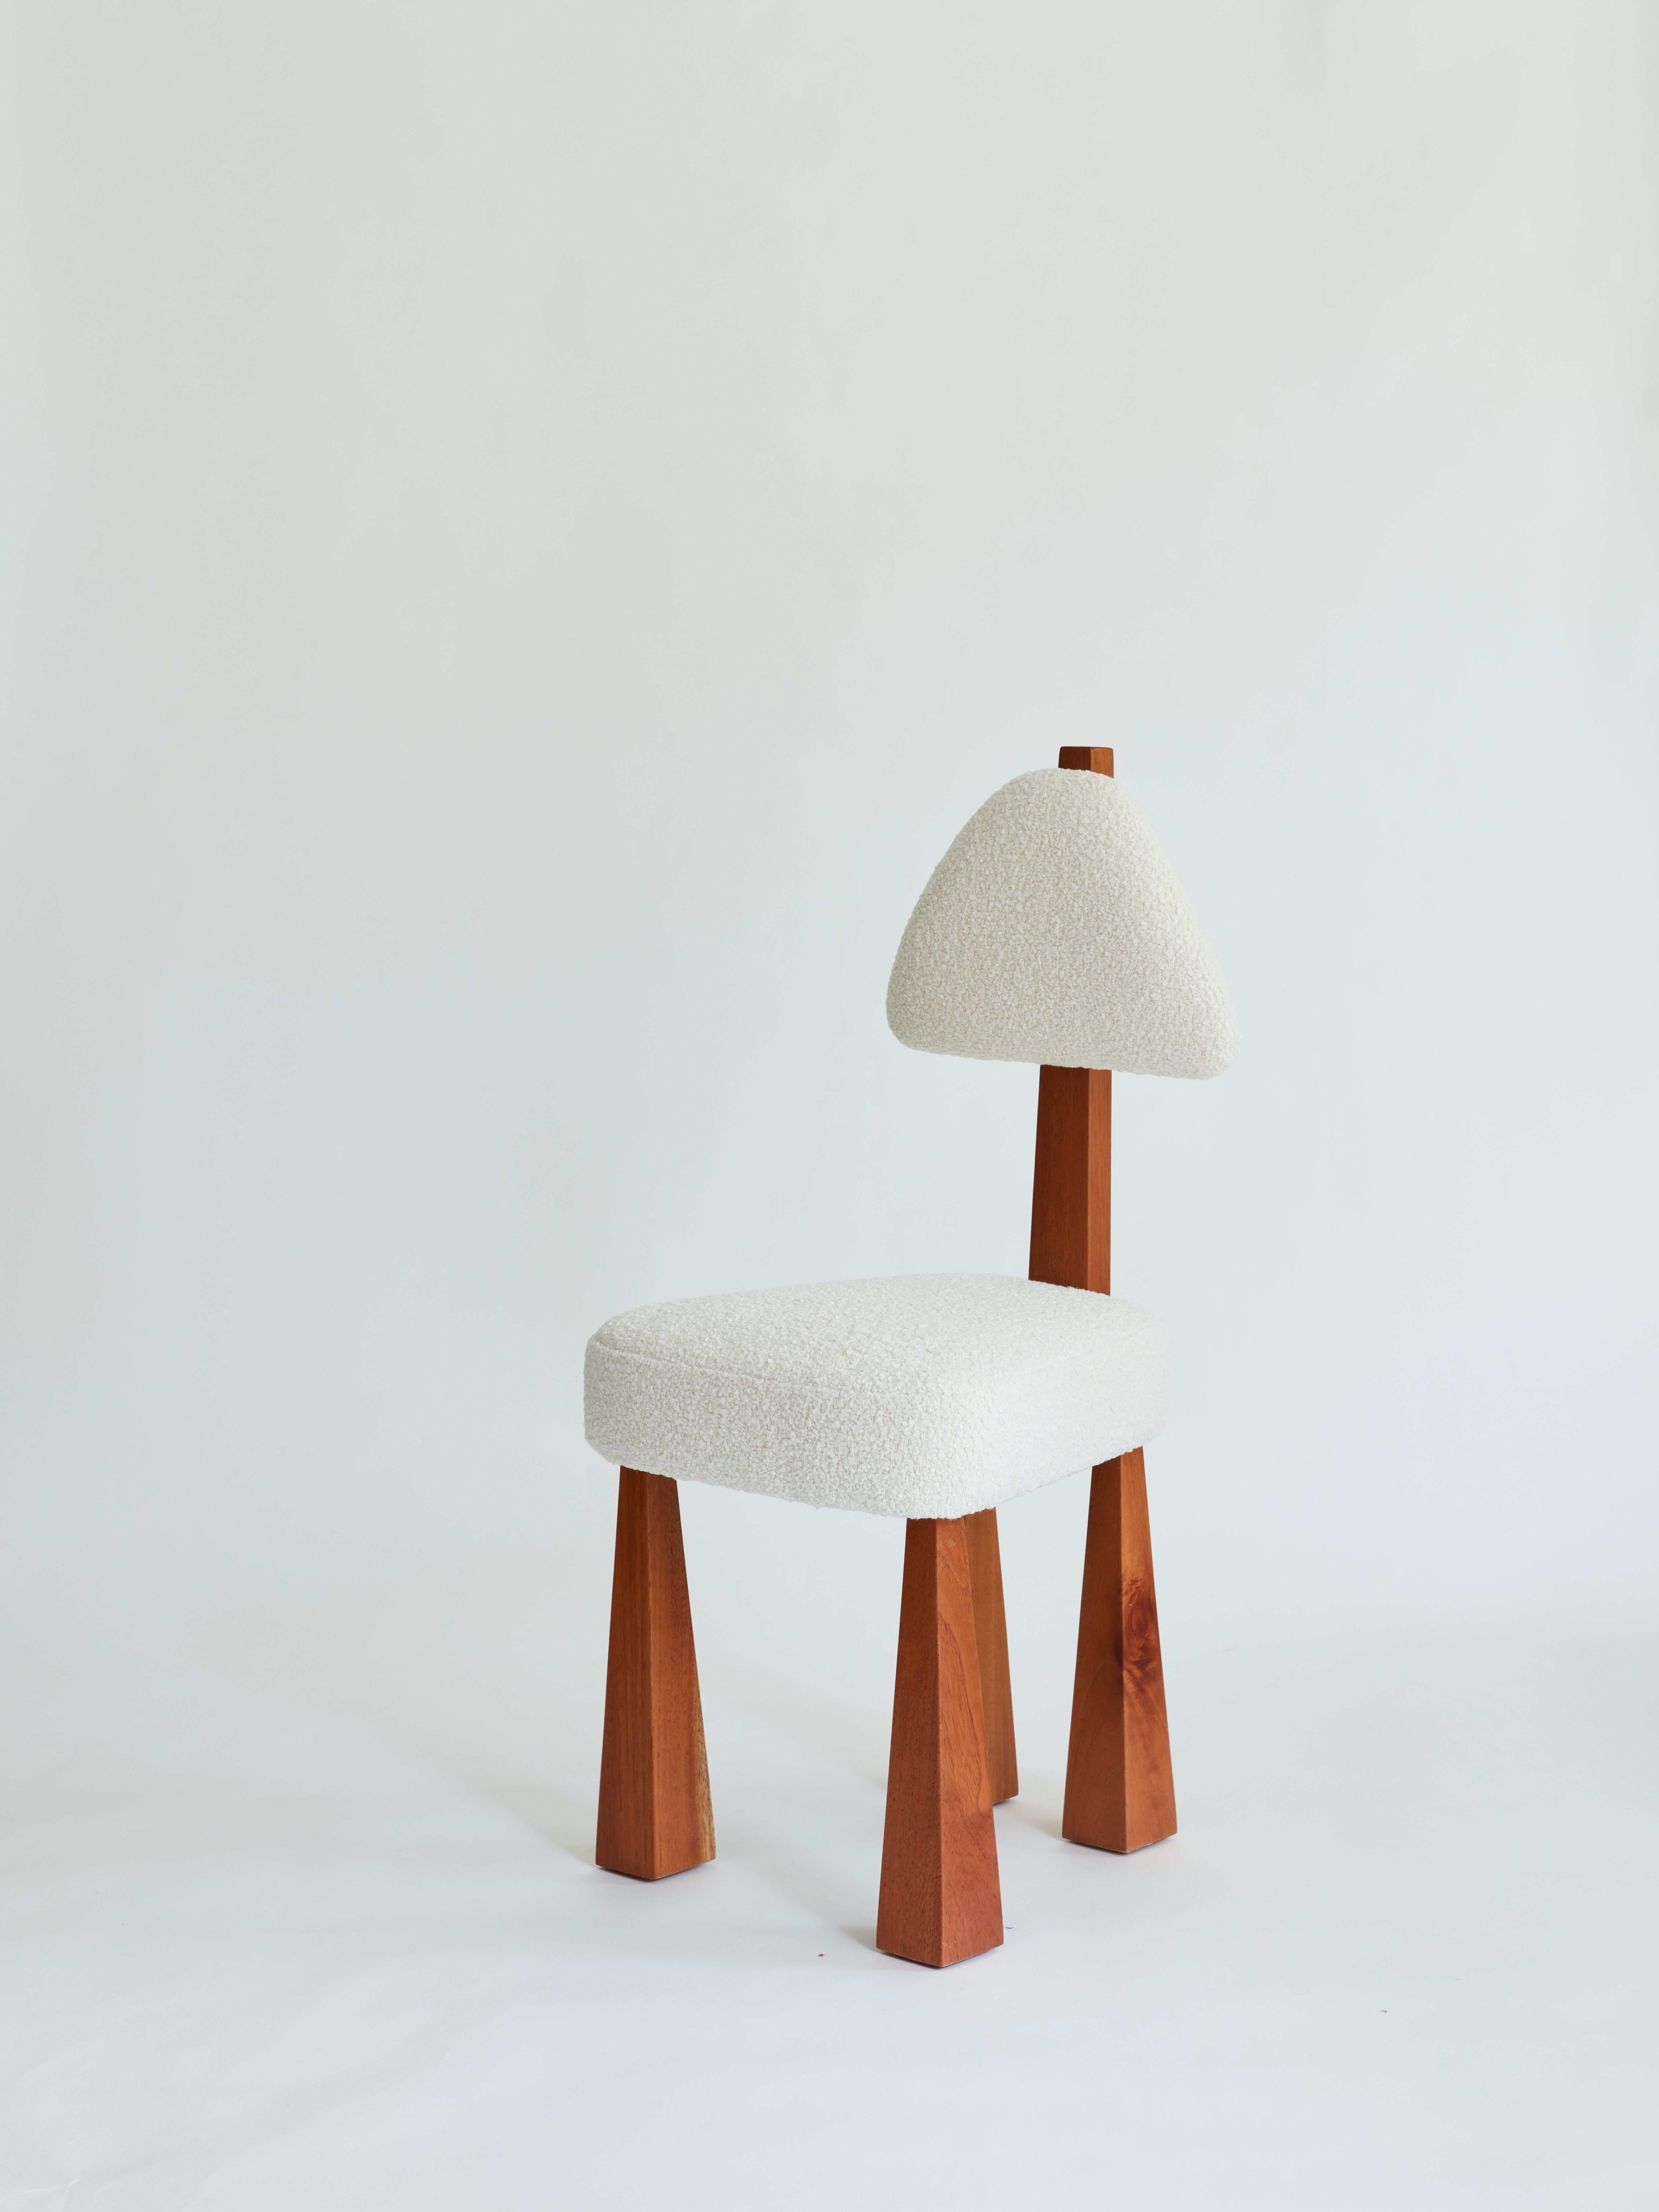 Esszimmerstuhl aus Holz und Bouclé, entworfen von Christian Siriano, auf Bestellung.

Stoff für Sitz-/Rückenkissen:
Elfenbein Bouclé

Sockel: Rote Eiche 

Maße: Sitzbreite vorne: 18